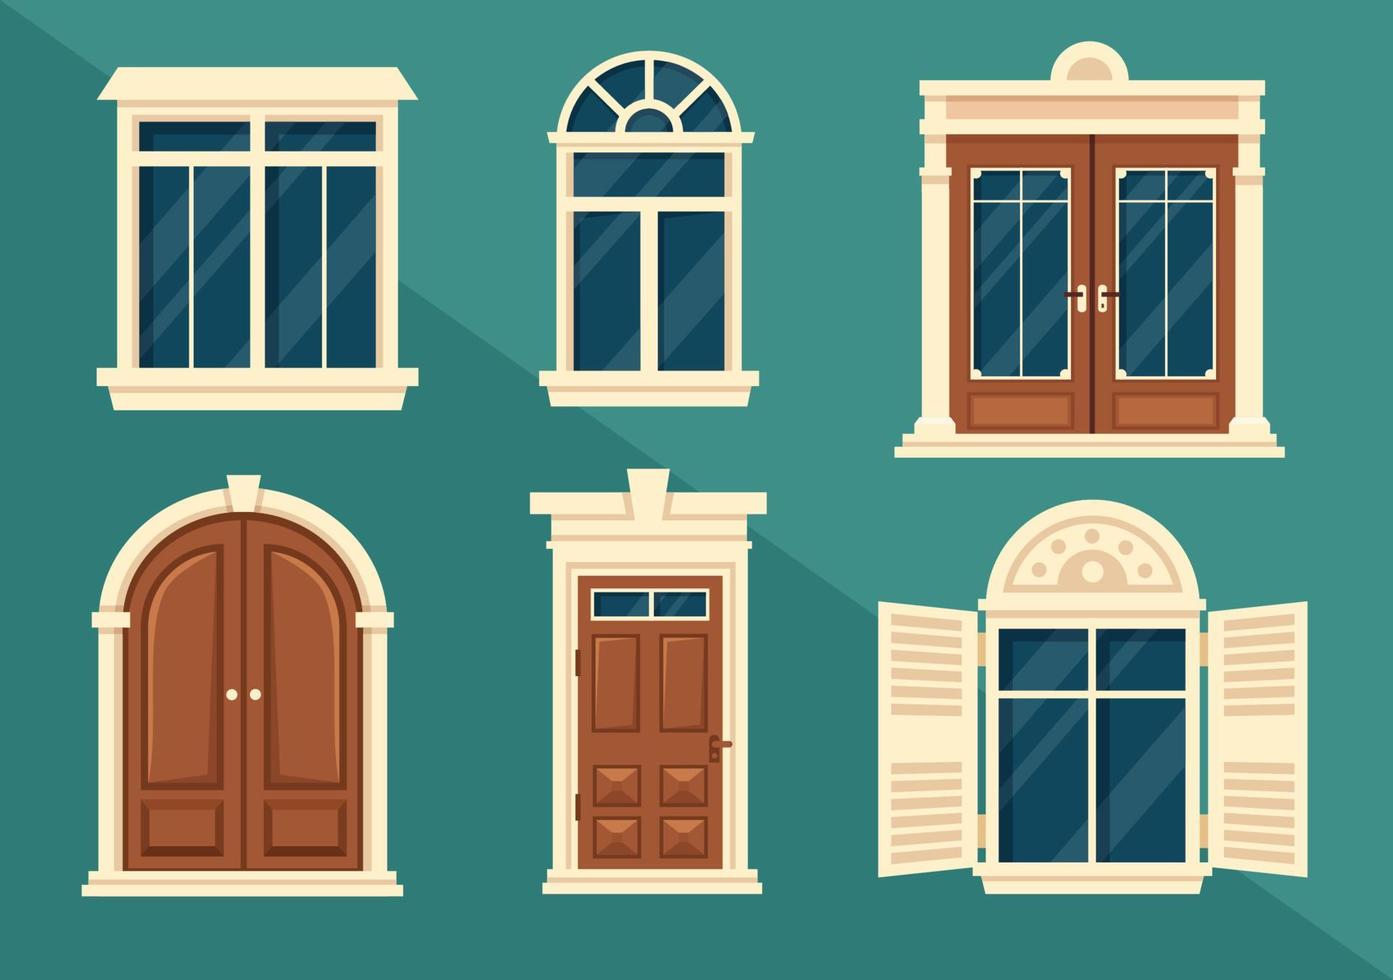 architecture de maison avec ensemble de portes et fenêtres de différentes formes, couleurs et tailles dans le modèle illustration de fond plat dessin animé dessiné à la main vecteur